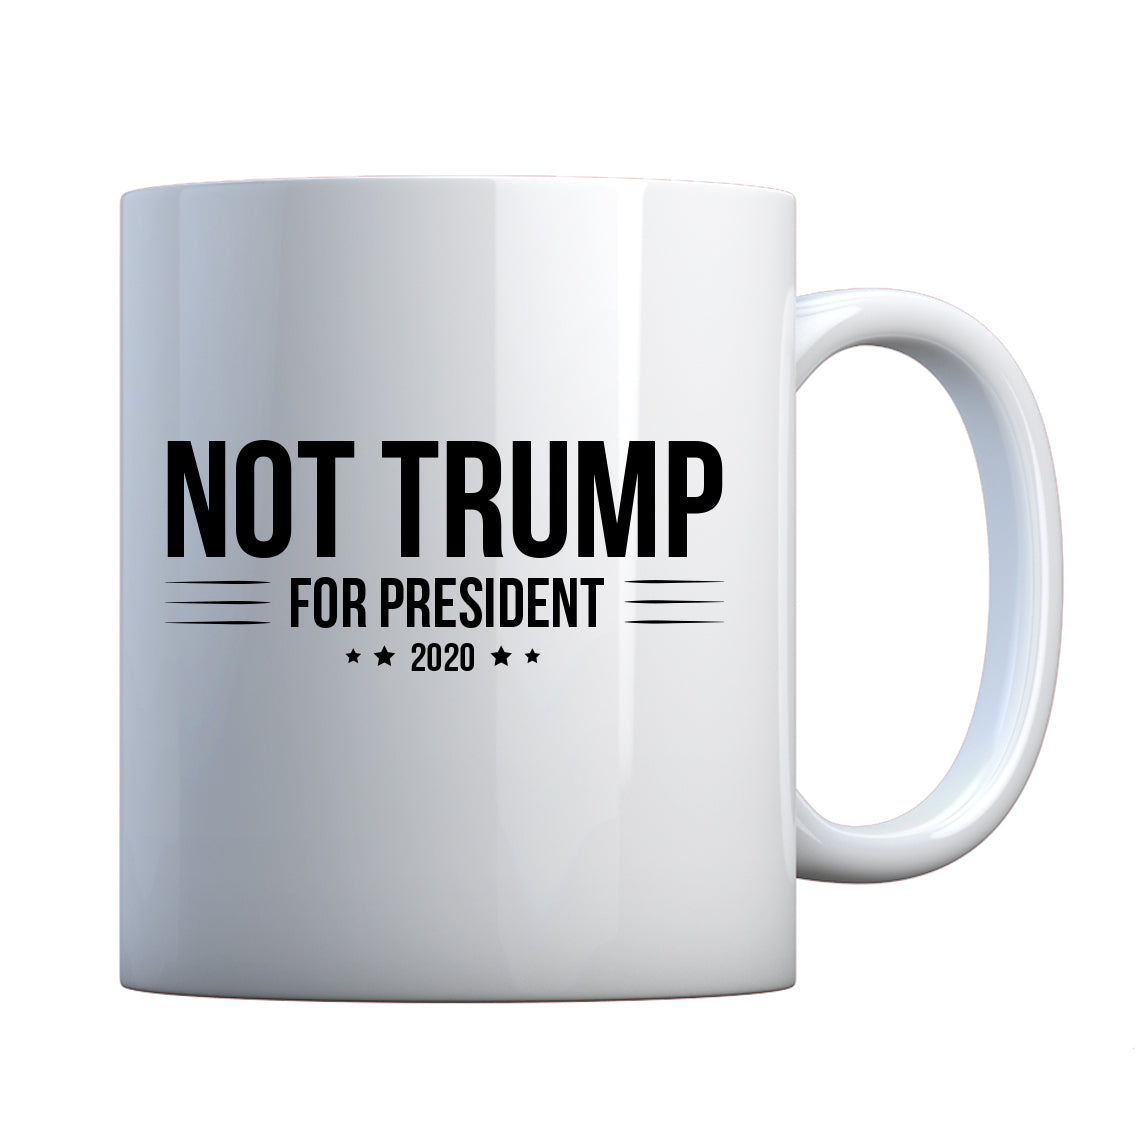 NOT TRUMP for President 2020 Ceramic Gift Mug